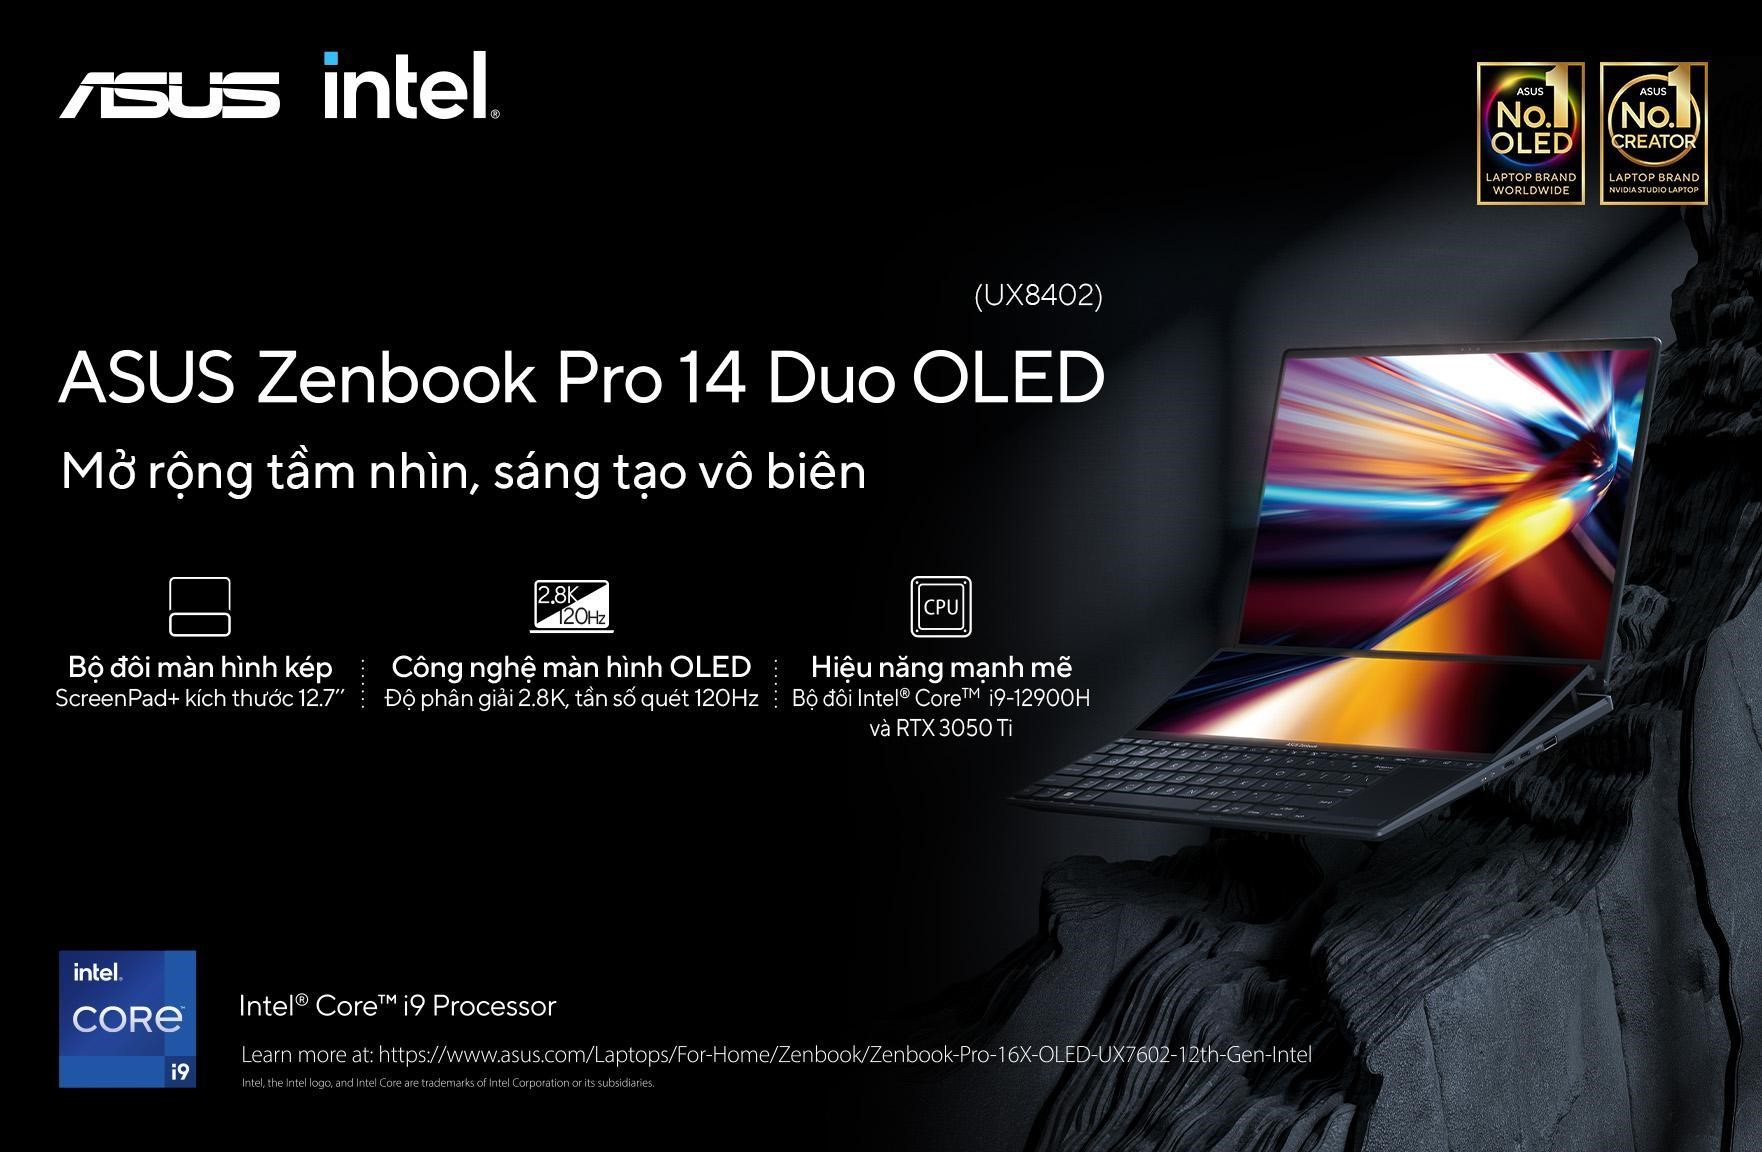 Zenbook-Pro-14-Duo-OLED-UX8402.jpg